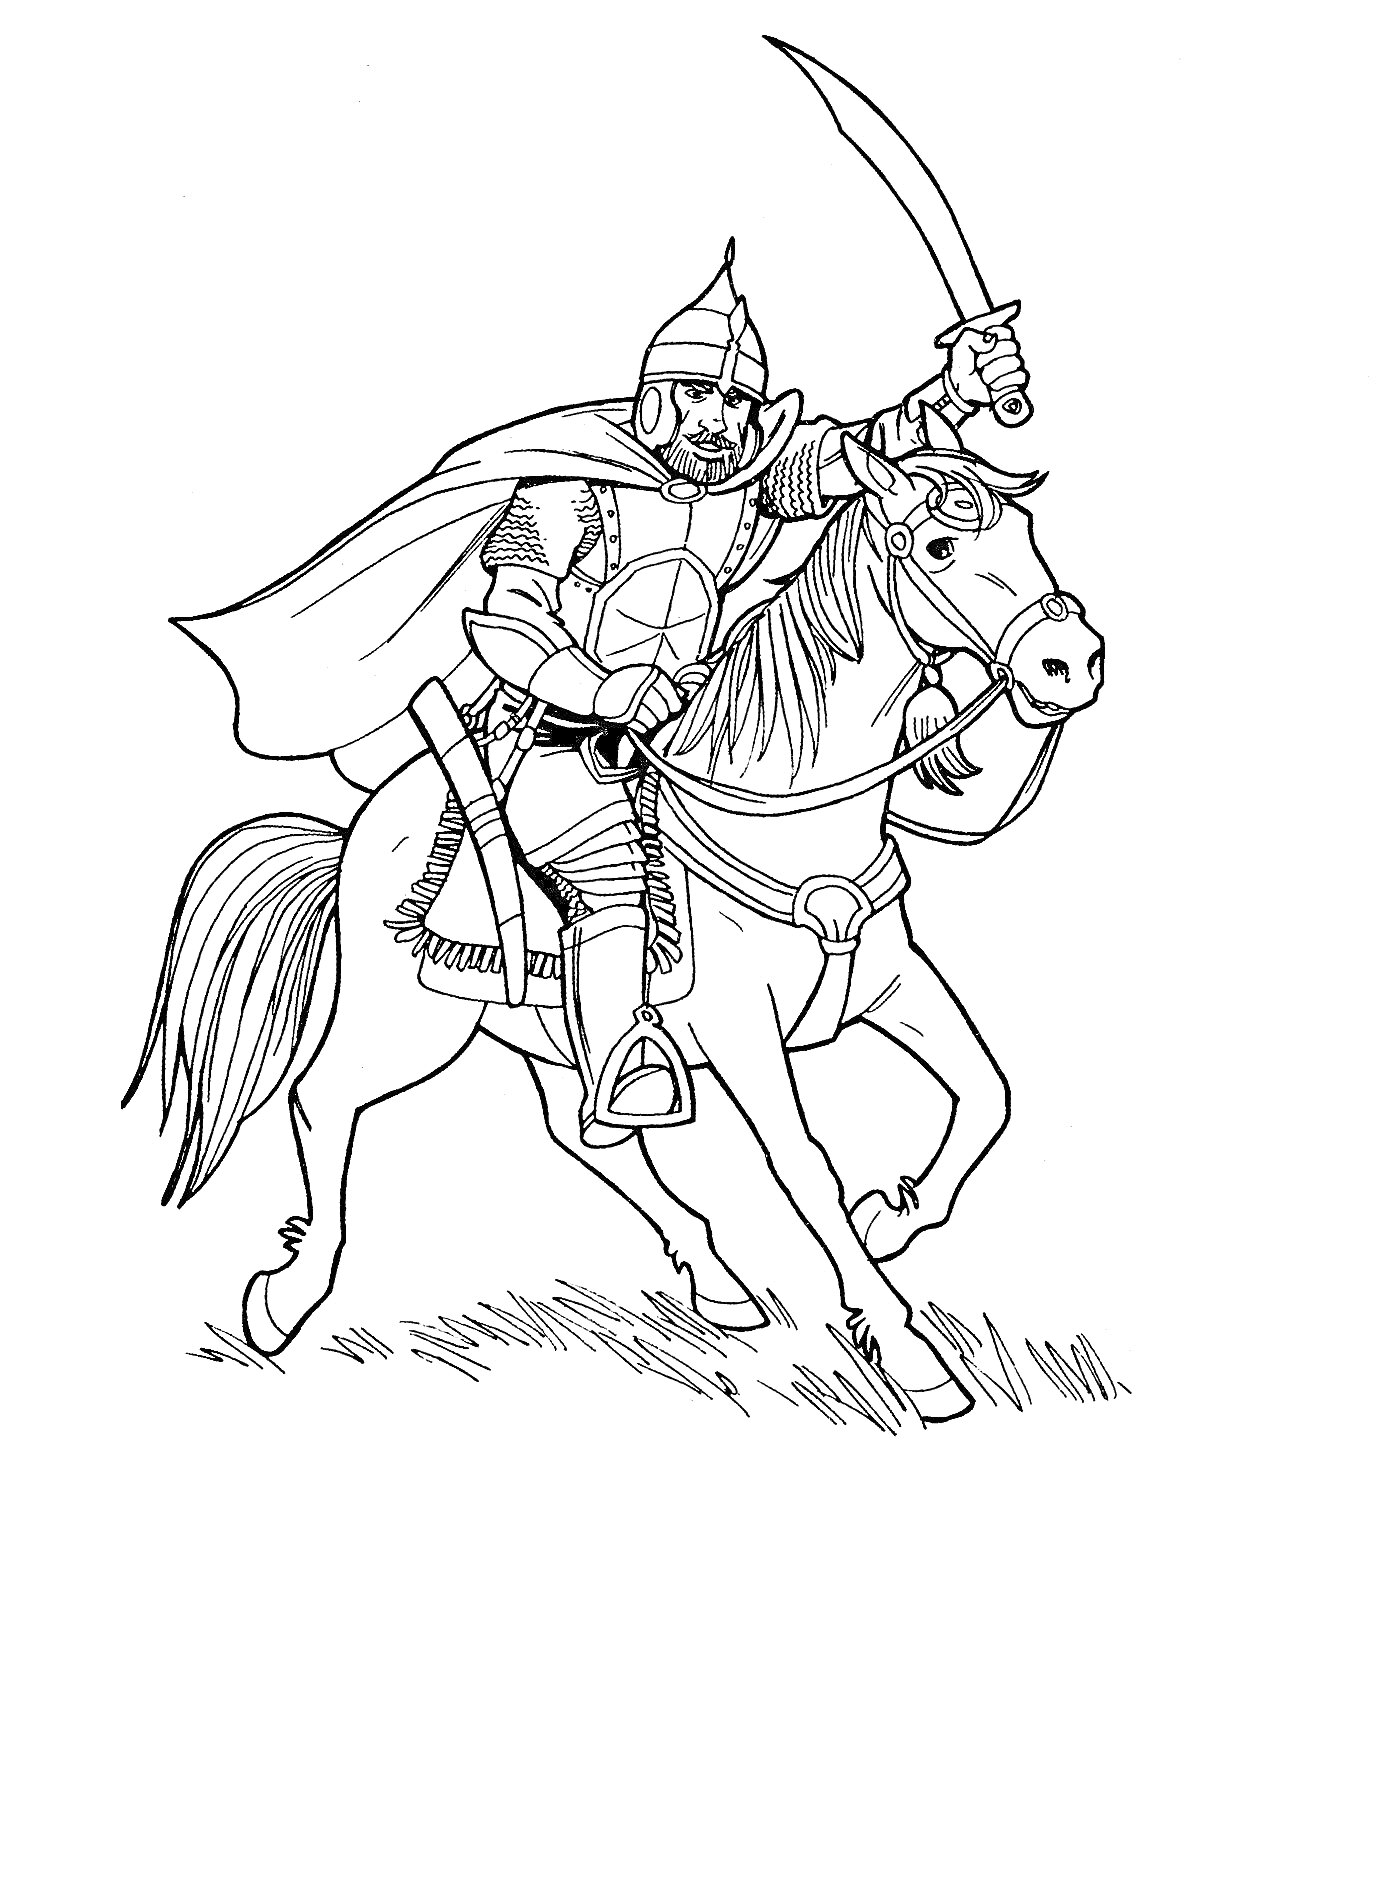 Богатырь на коне с поднятым мечом